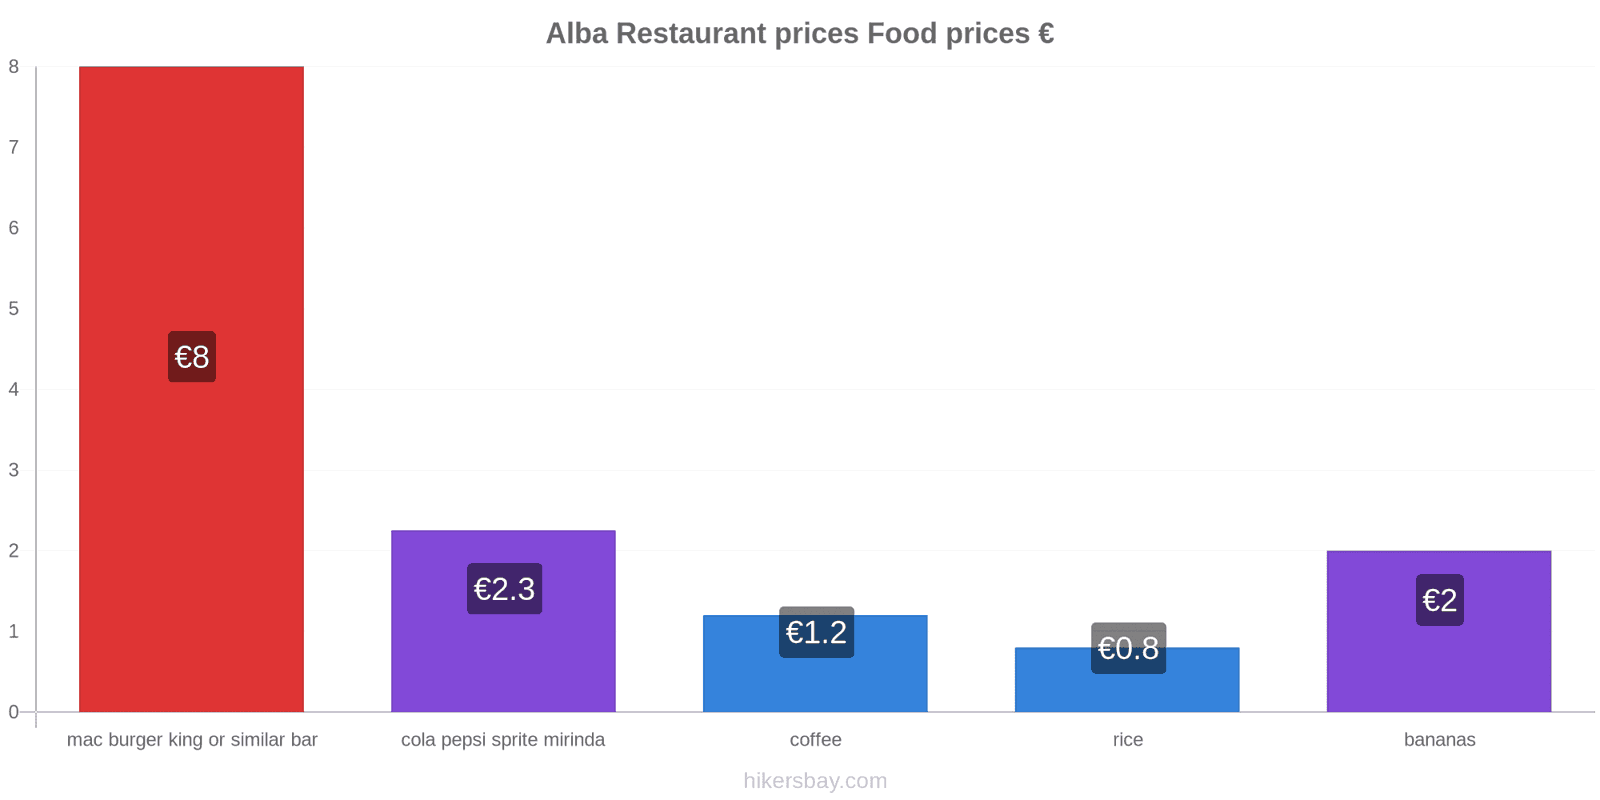 Alba price changes hikersbay.com